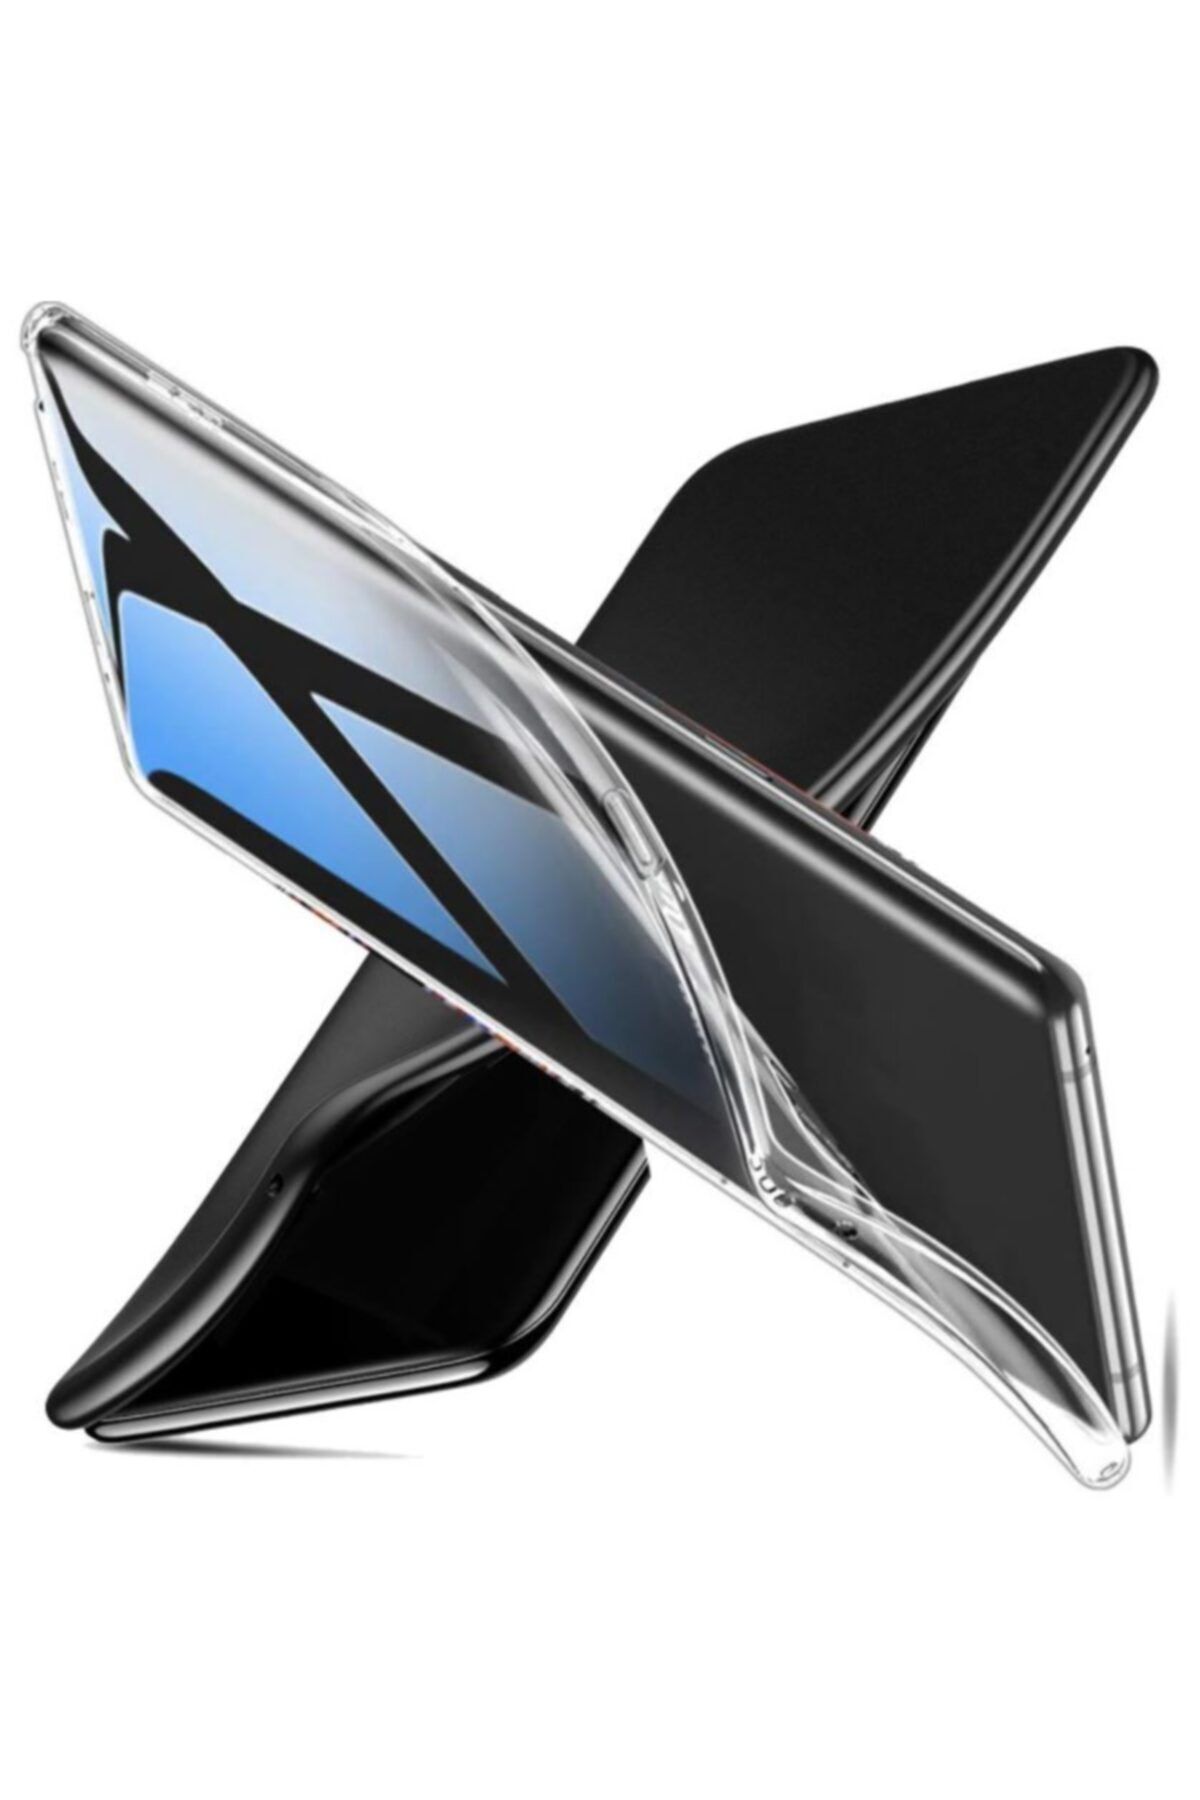 Canpay Sony Xperia Z1 Uyumlu Kılıf Crystal Series, Soft Şeffaf A+ Kalite Case